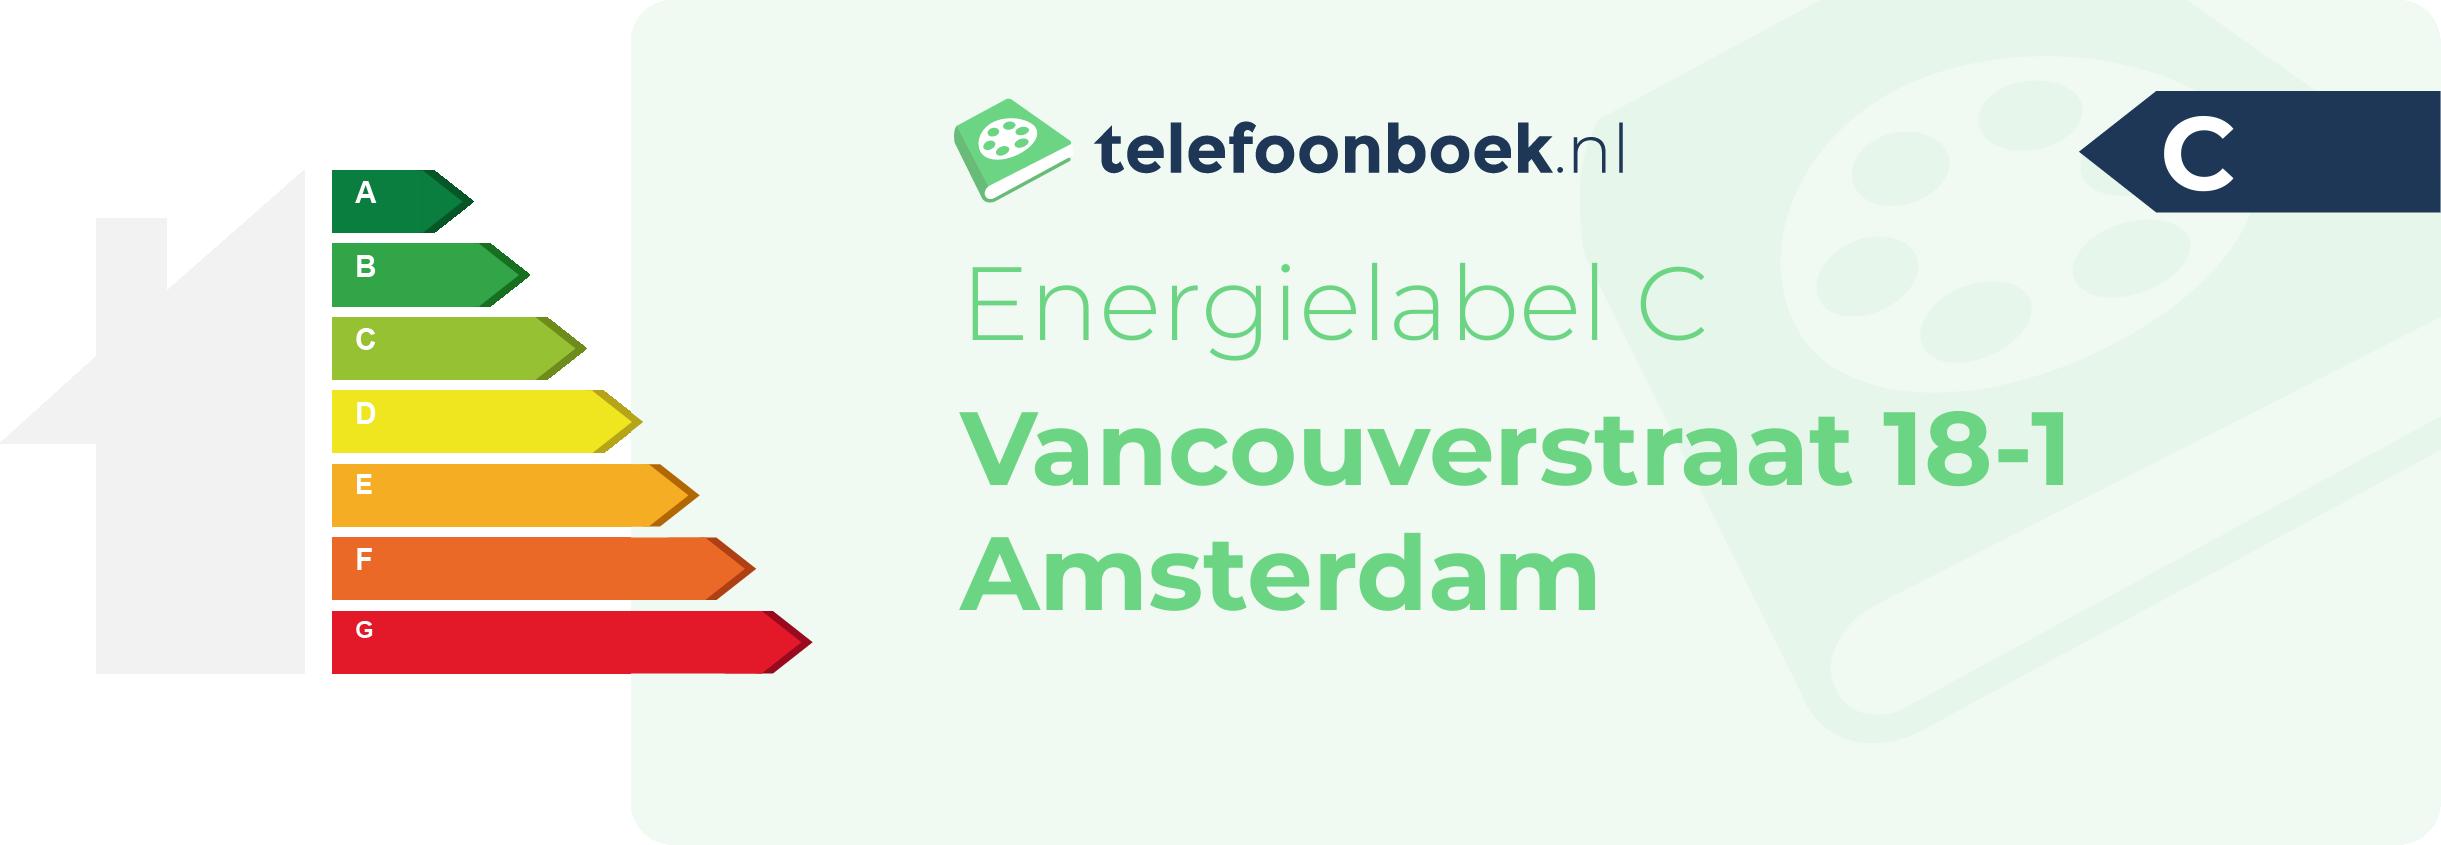 Energielabel Vancouverstraat 18-1 Amsterdam